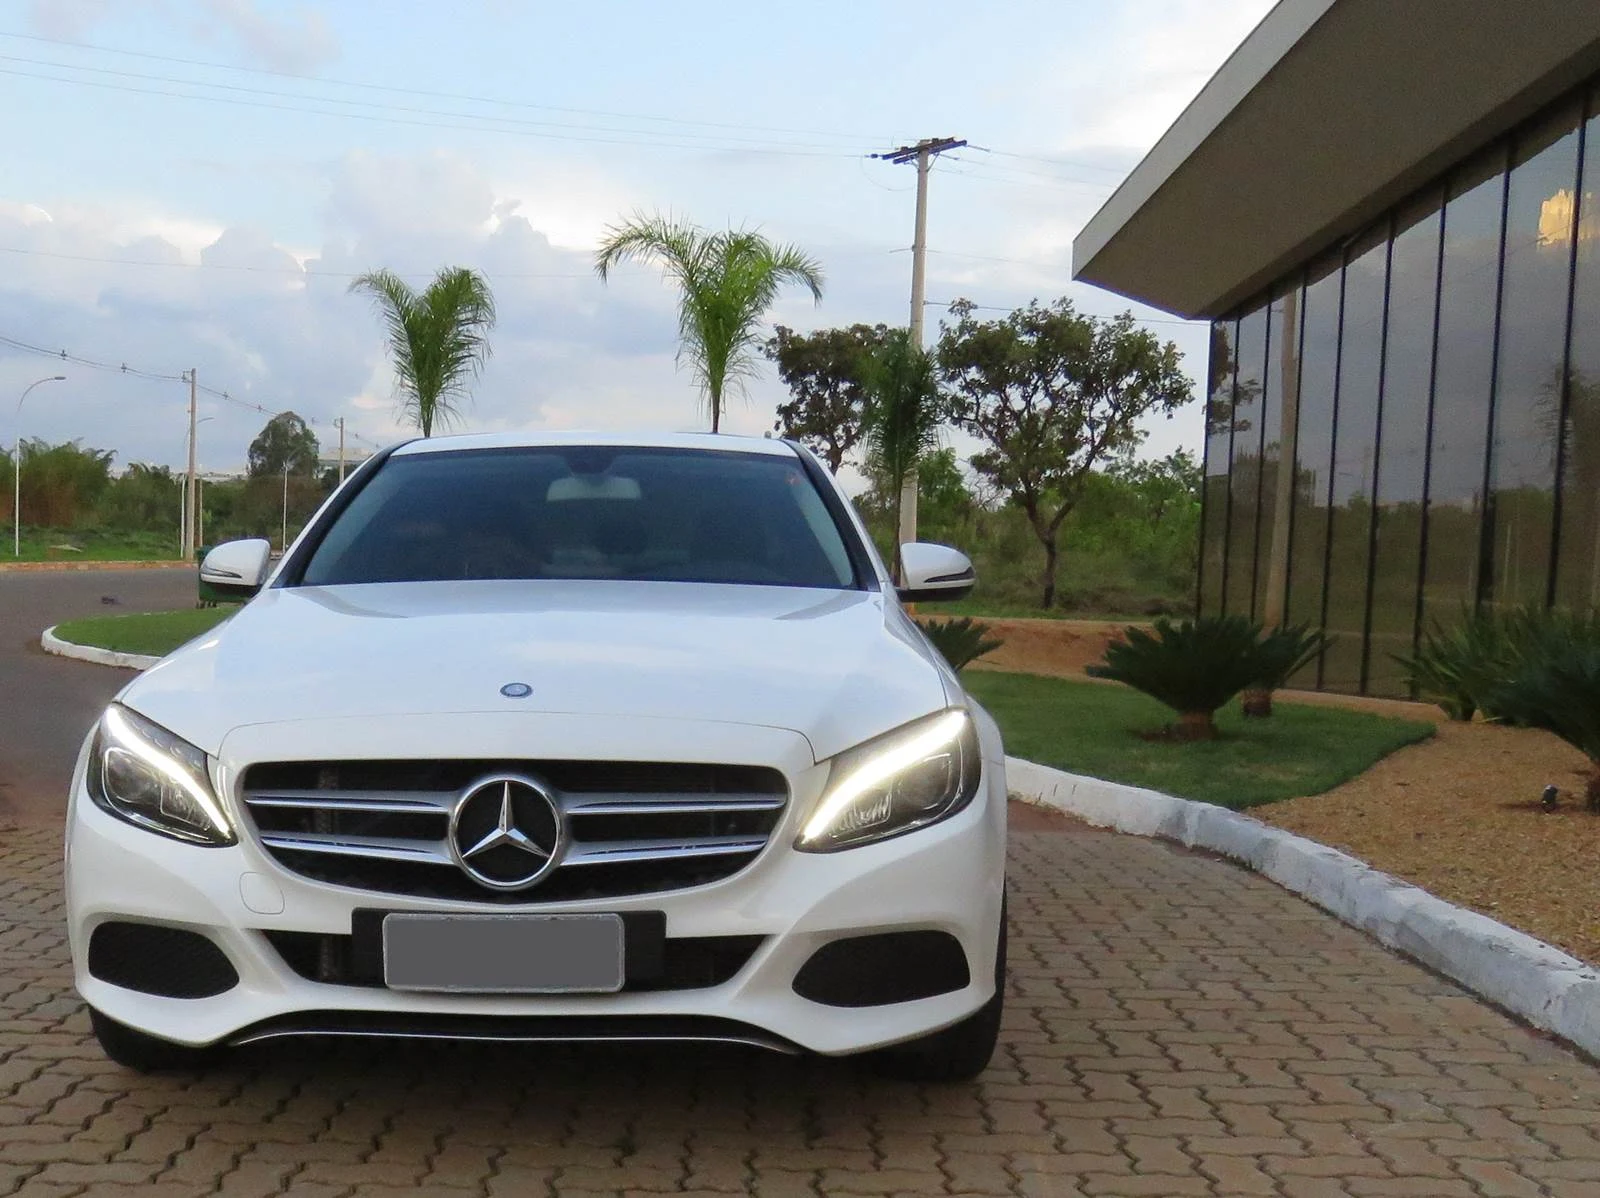 Mercedes-Benz Classe C: carro de luxo mais vendido em 2015